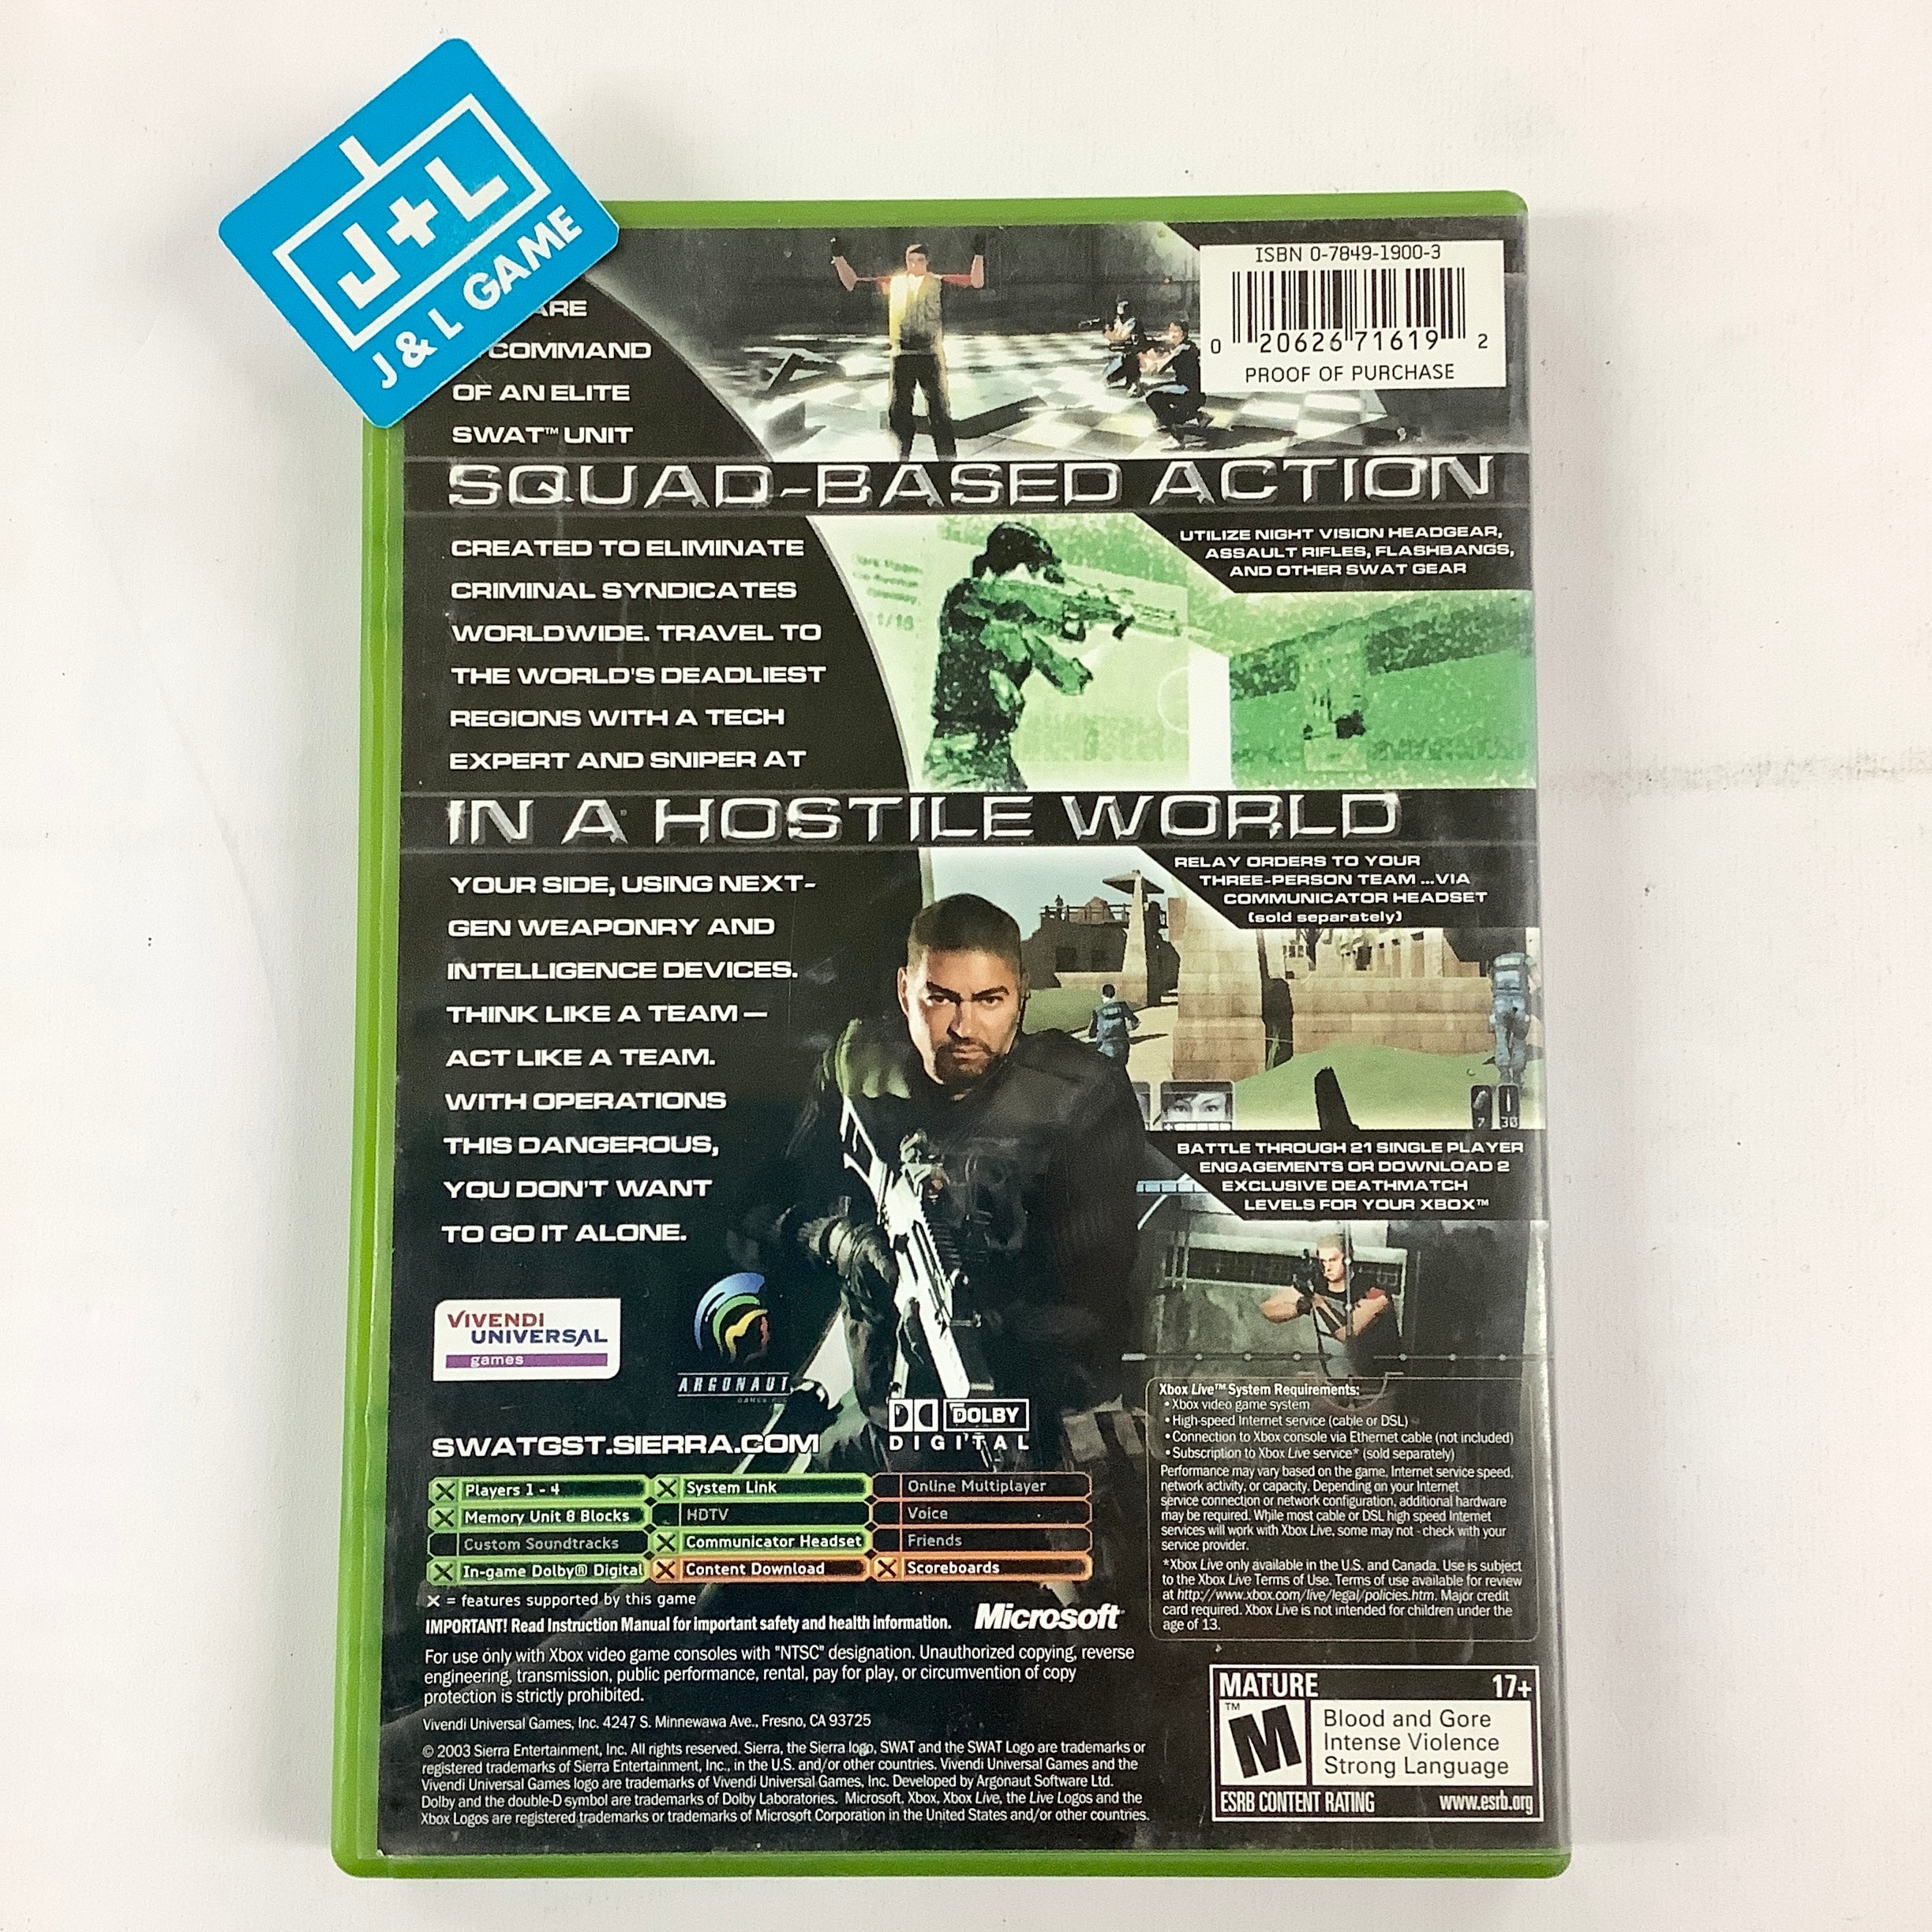 SWAT: Global Strike Team - (XB) Xbox [Pre-Owned] Video Games Sierra Entertainment   